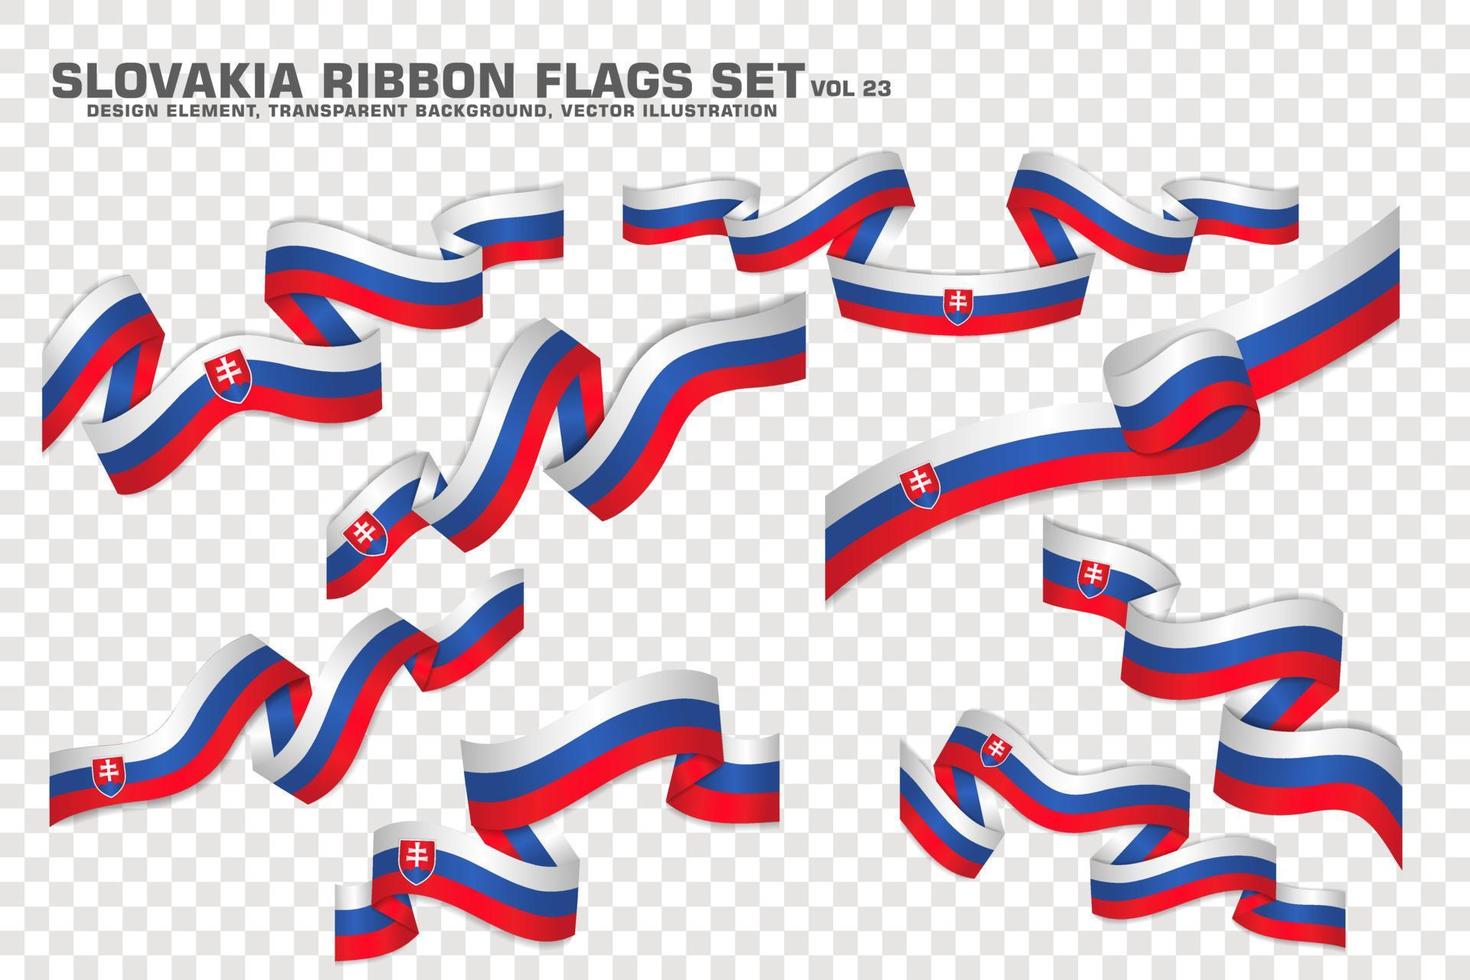 Slowakije lint vlaggen set, element ontwerp. vector illustratie